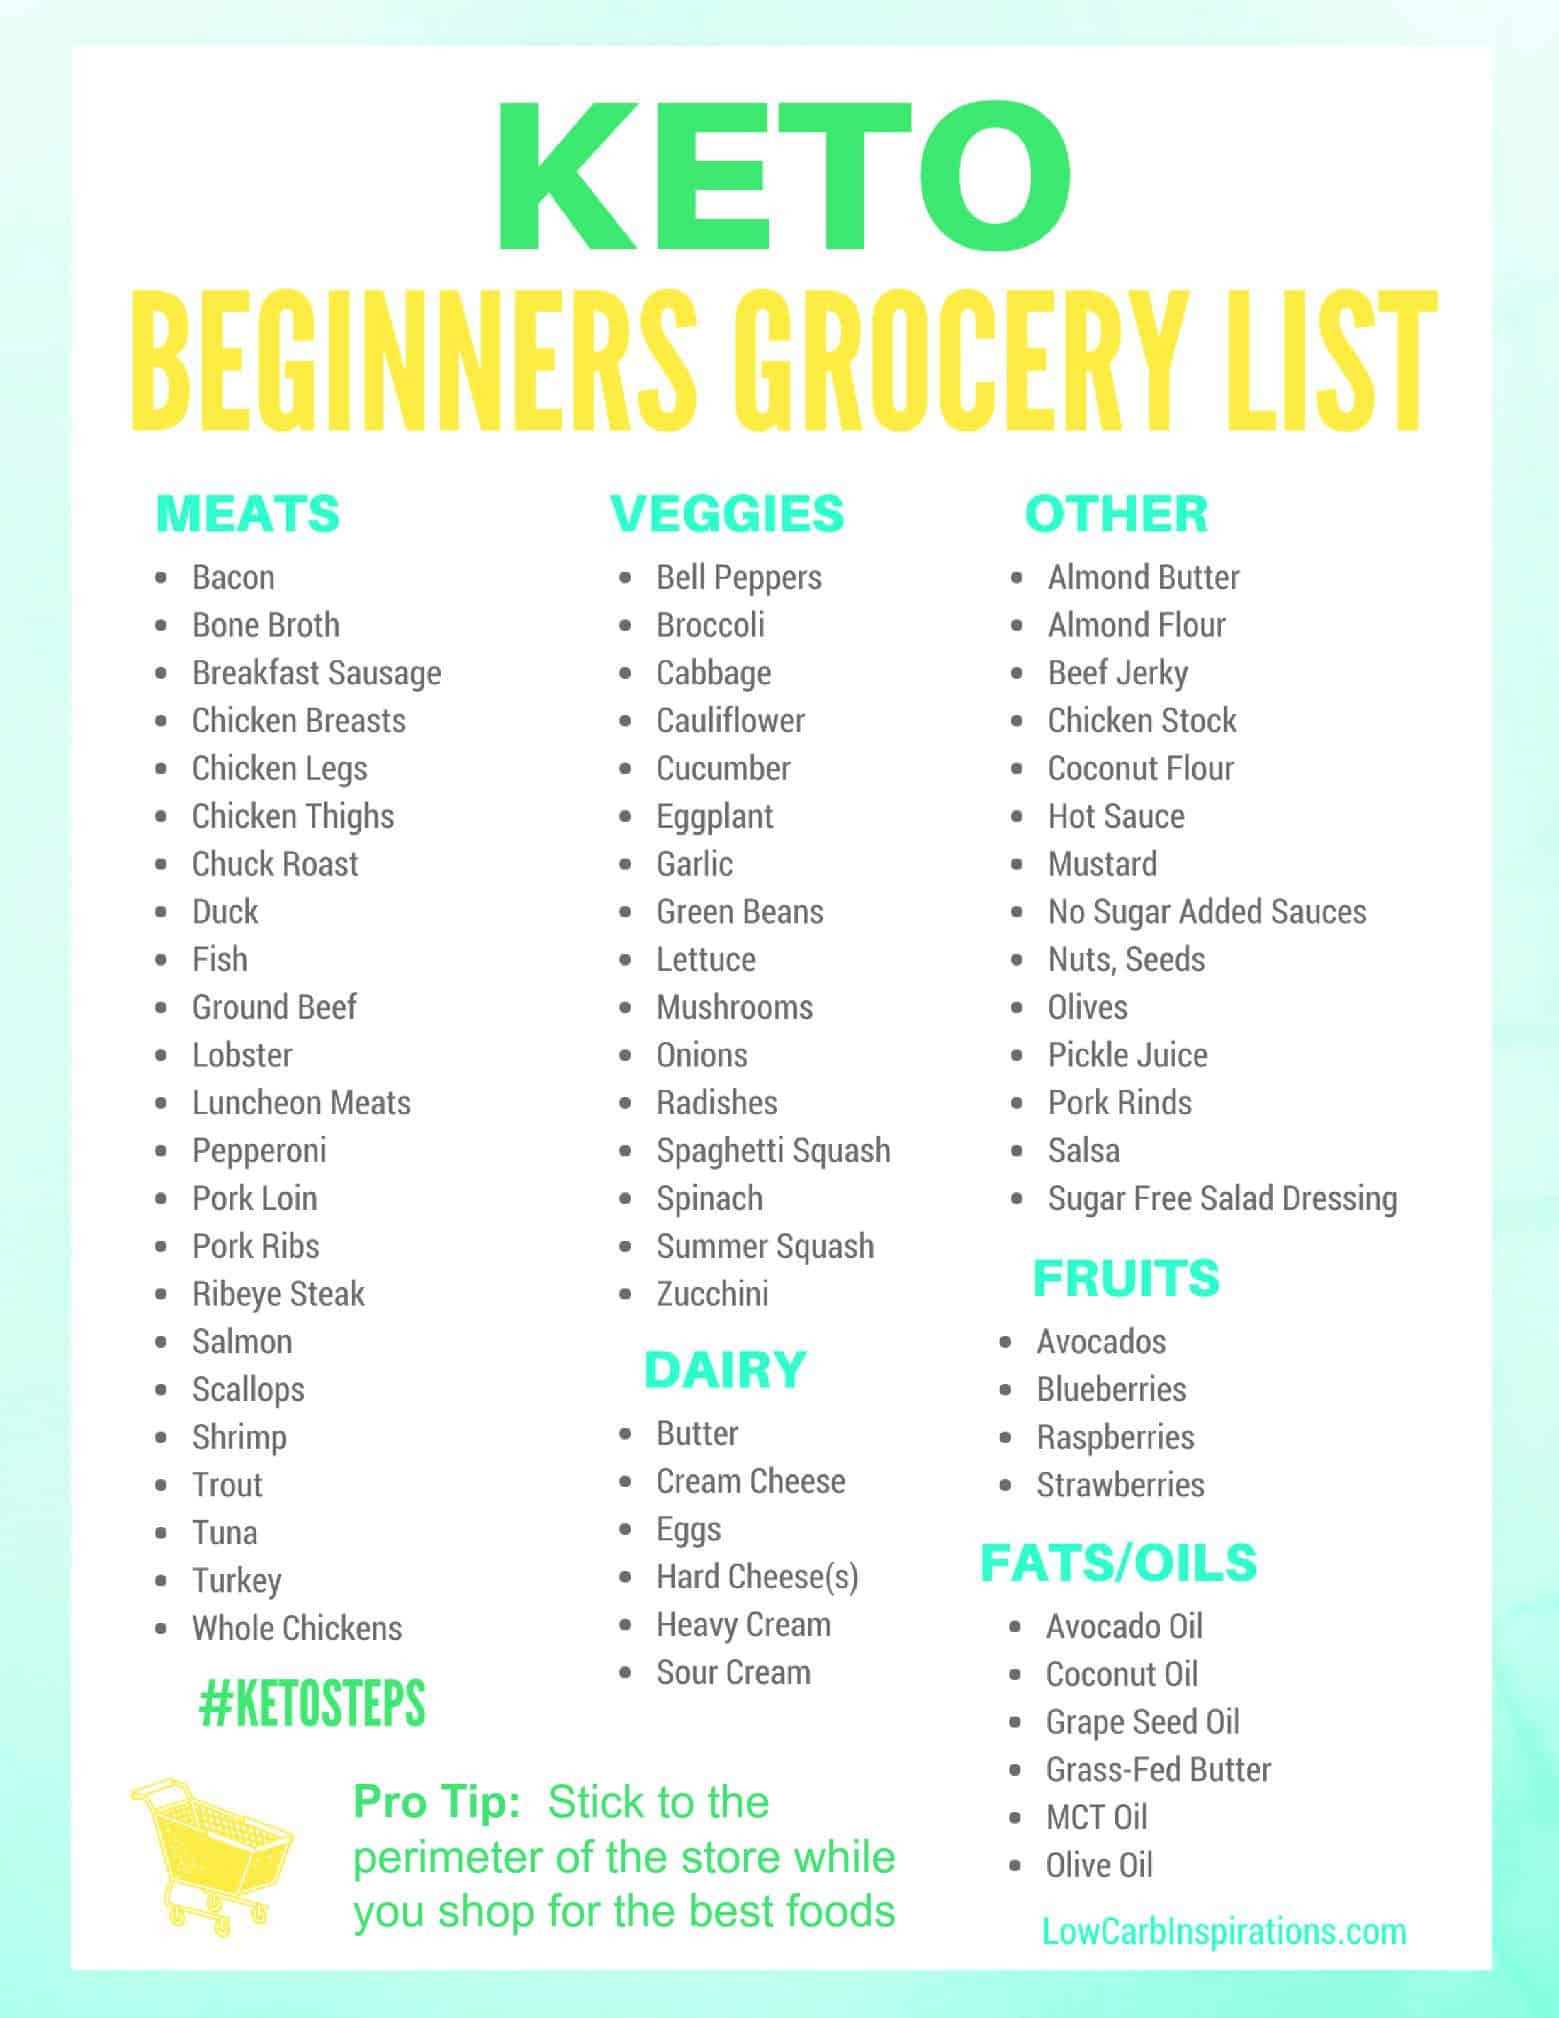 Keto Diet for Beginners New Keto Grocery List for Beginners isavea2z